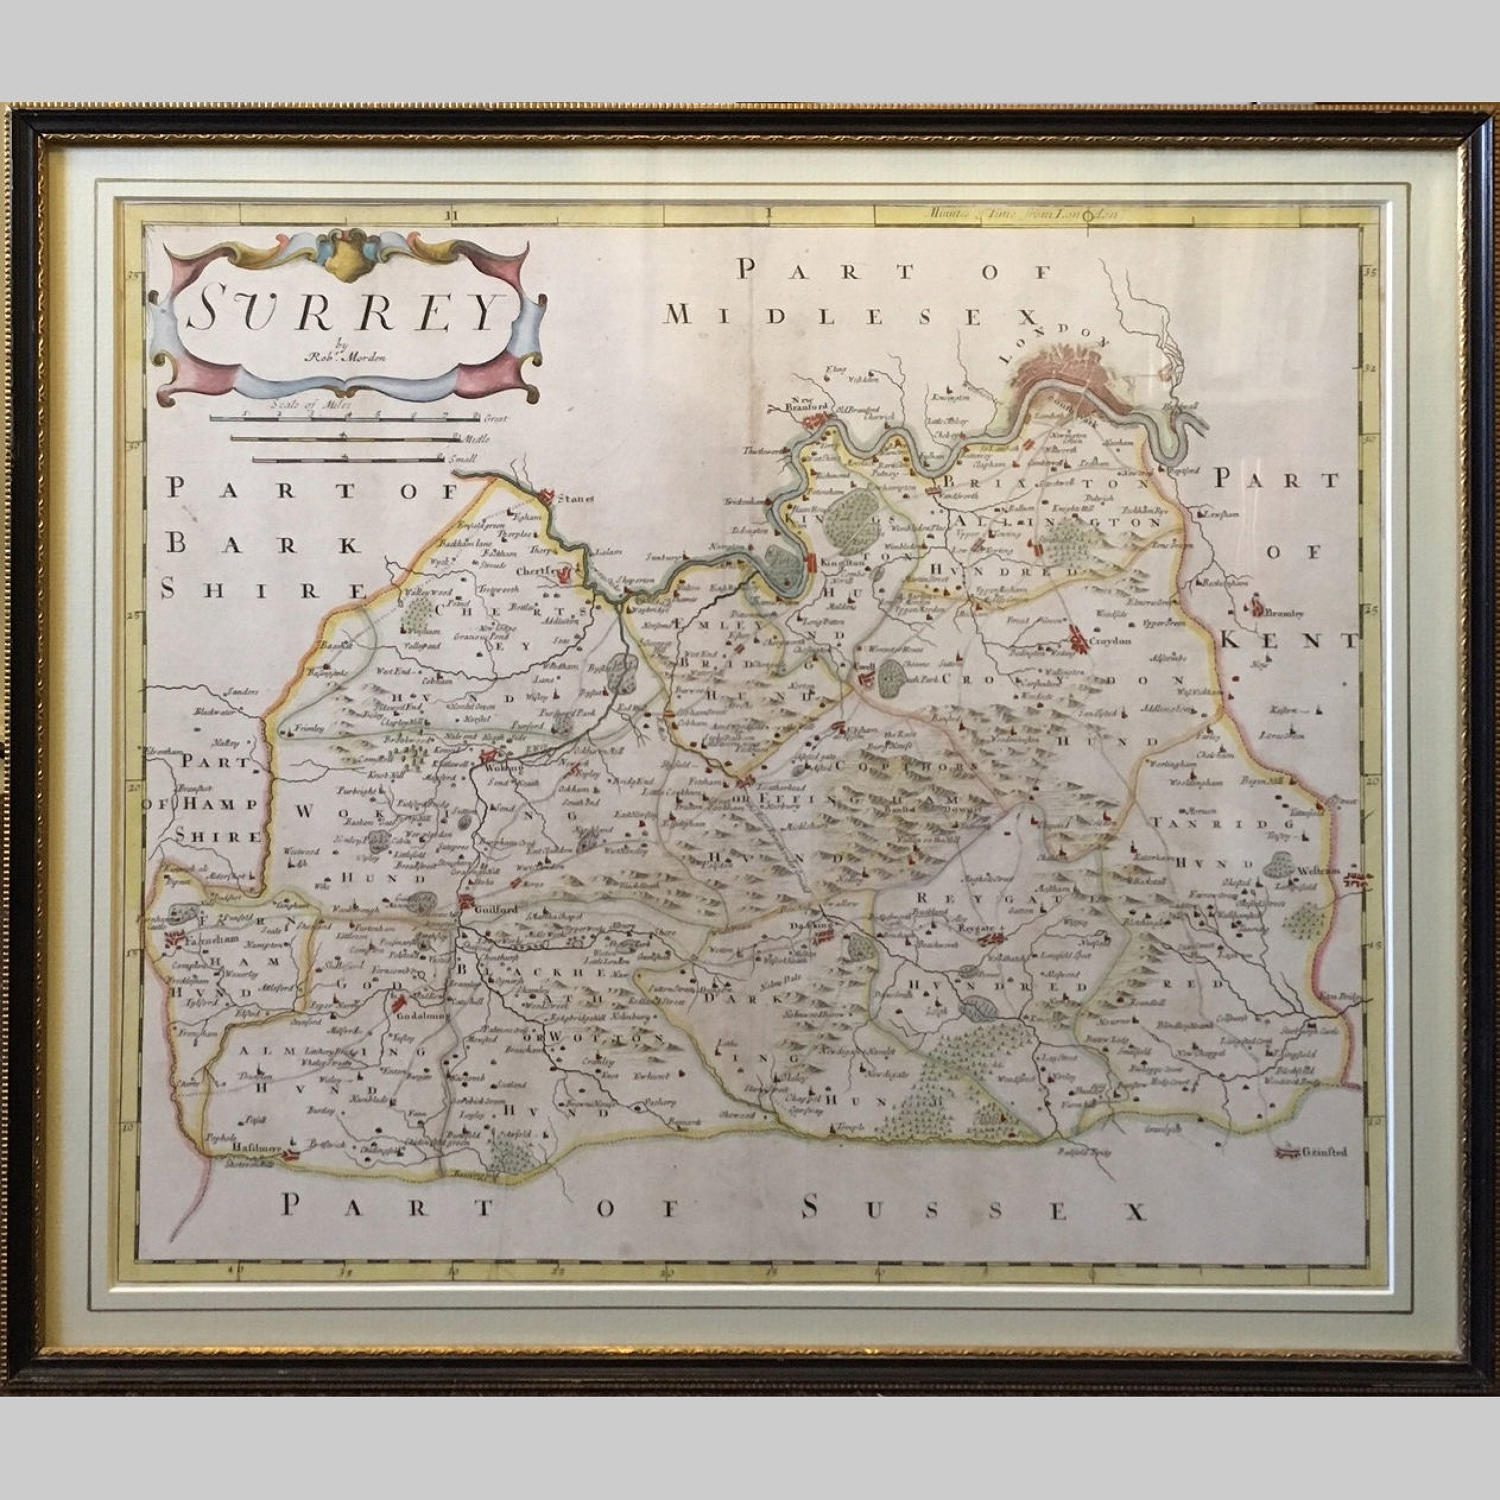 Map of Surrey by Robert Morden (c.1650-1703)